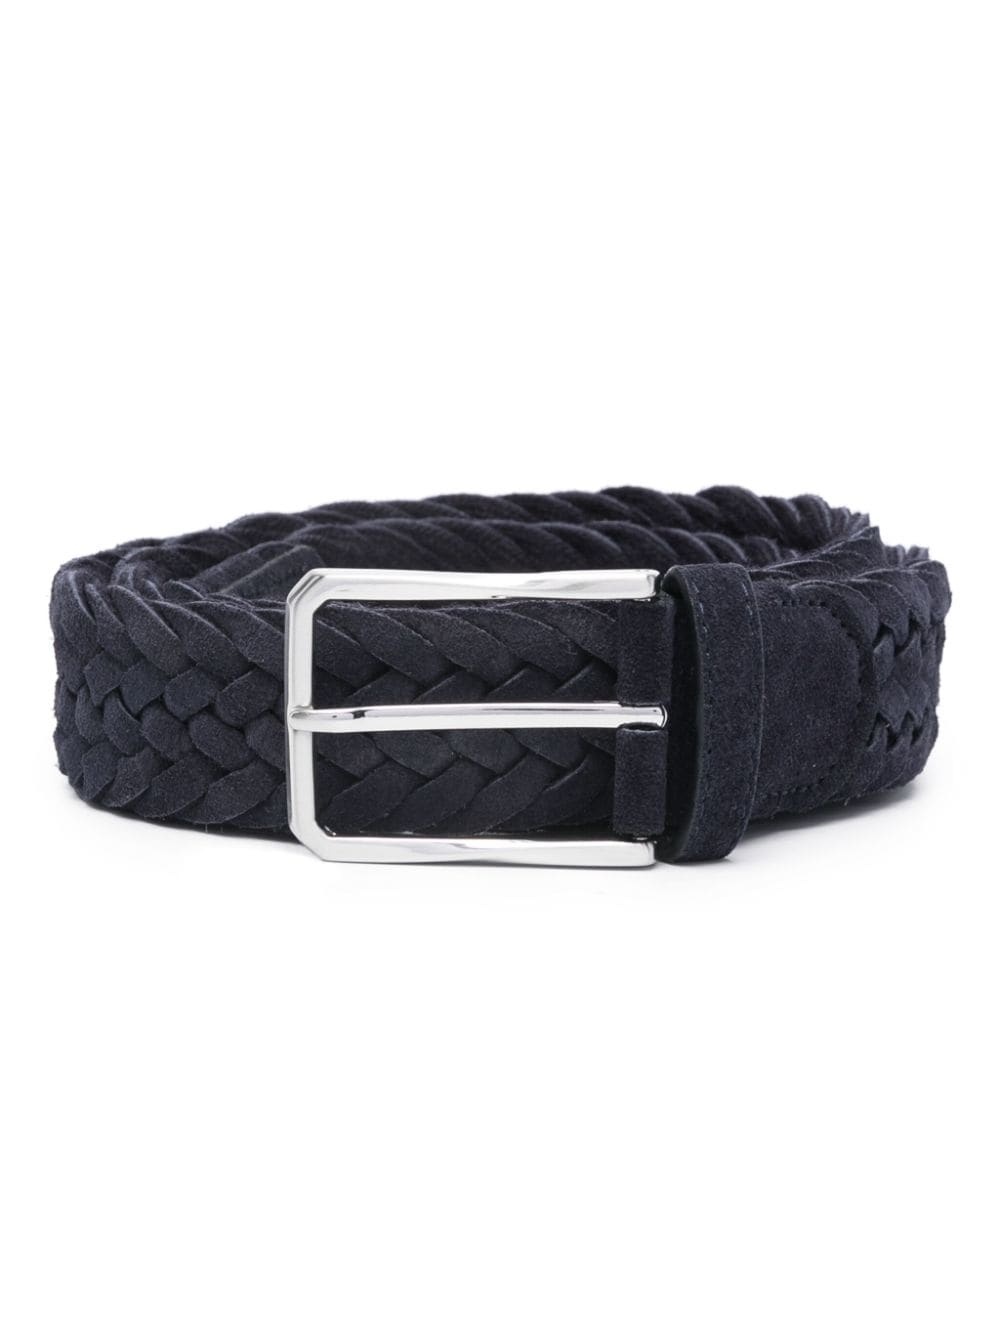 braided suede belt - 1